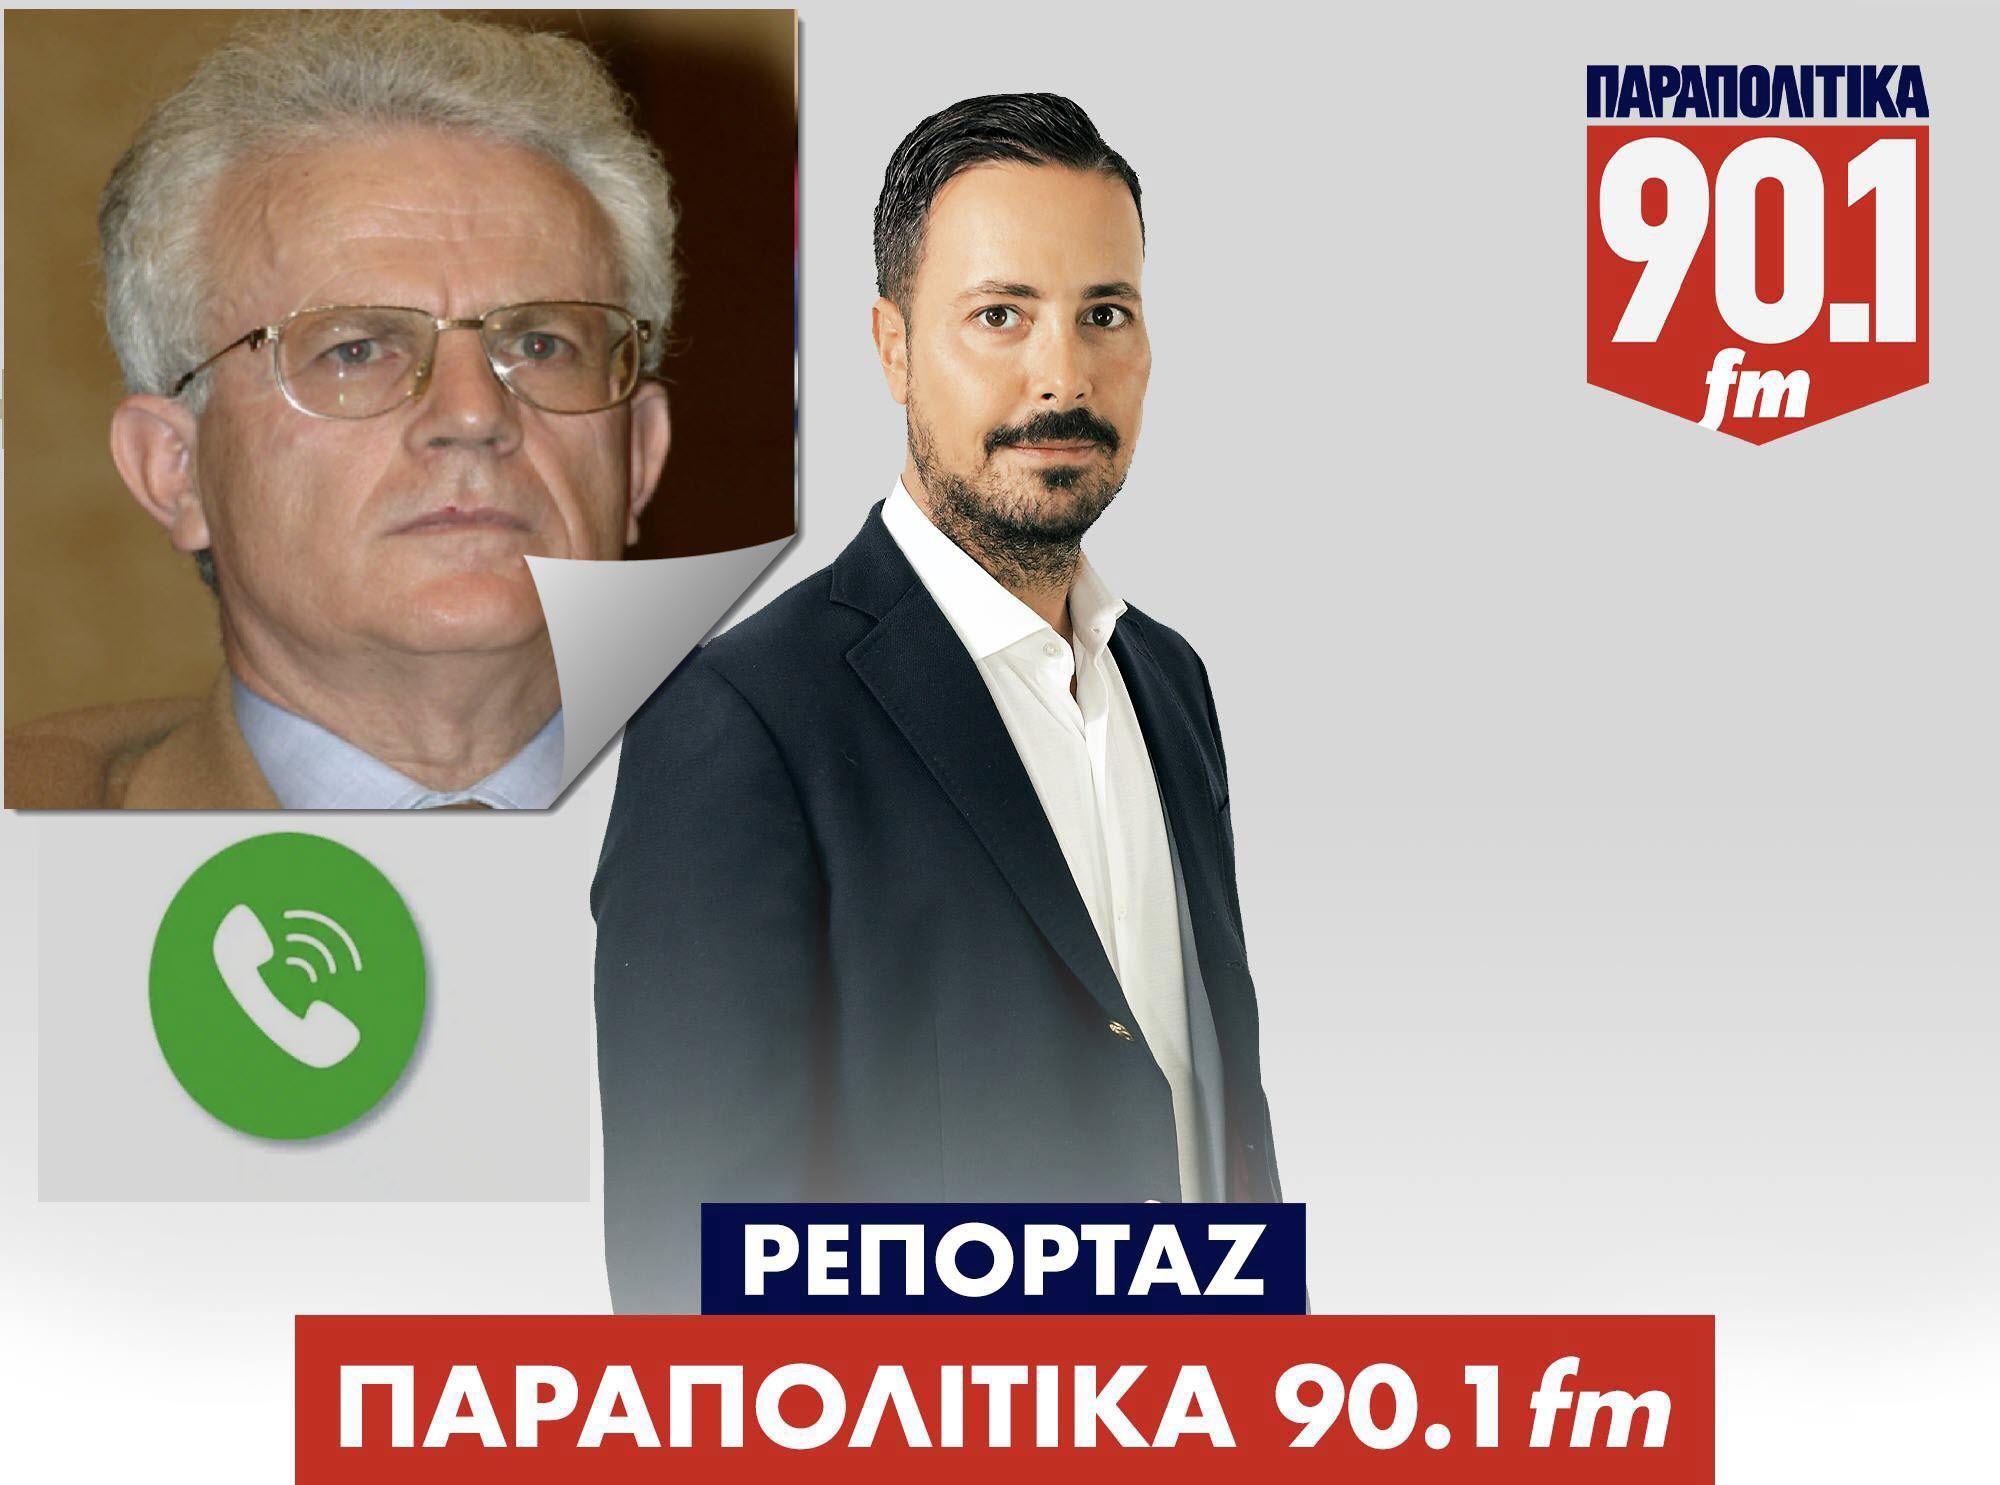 Α. Κανελλοπουλος: Ο πρώην αντεισαγγελέας του ΑΠ στον Πέτρο Κουσουλό για την απόφαση του να συμπράξει με τον Κασιδιάρη (ηχητικό)